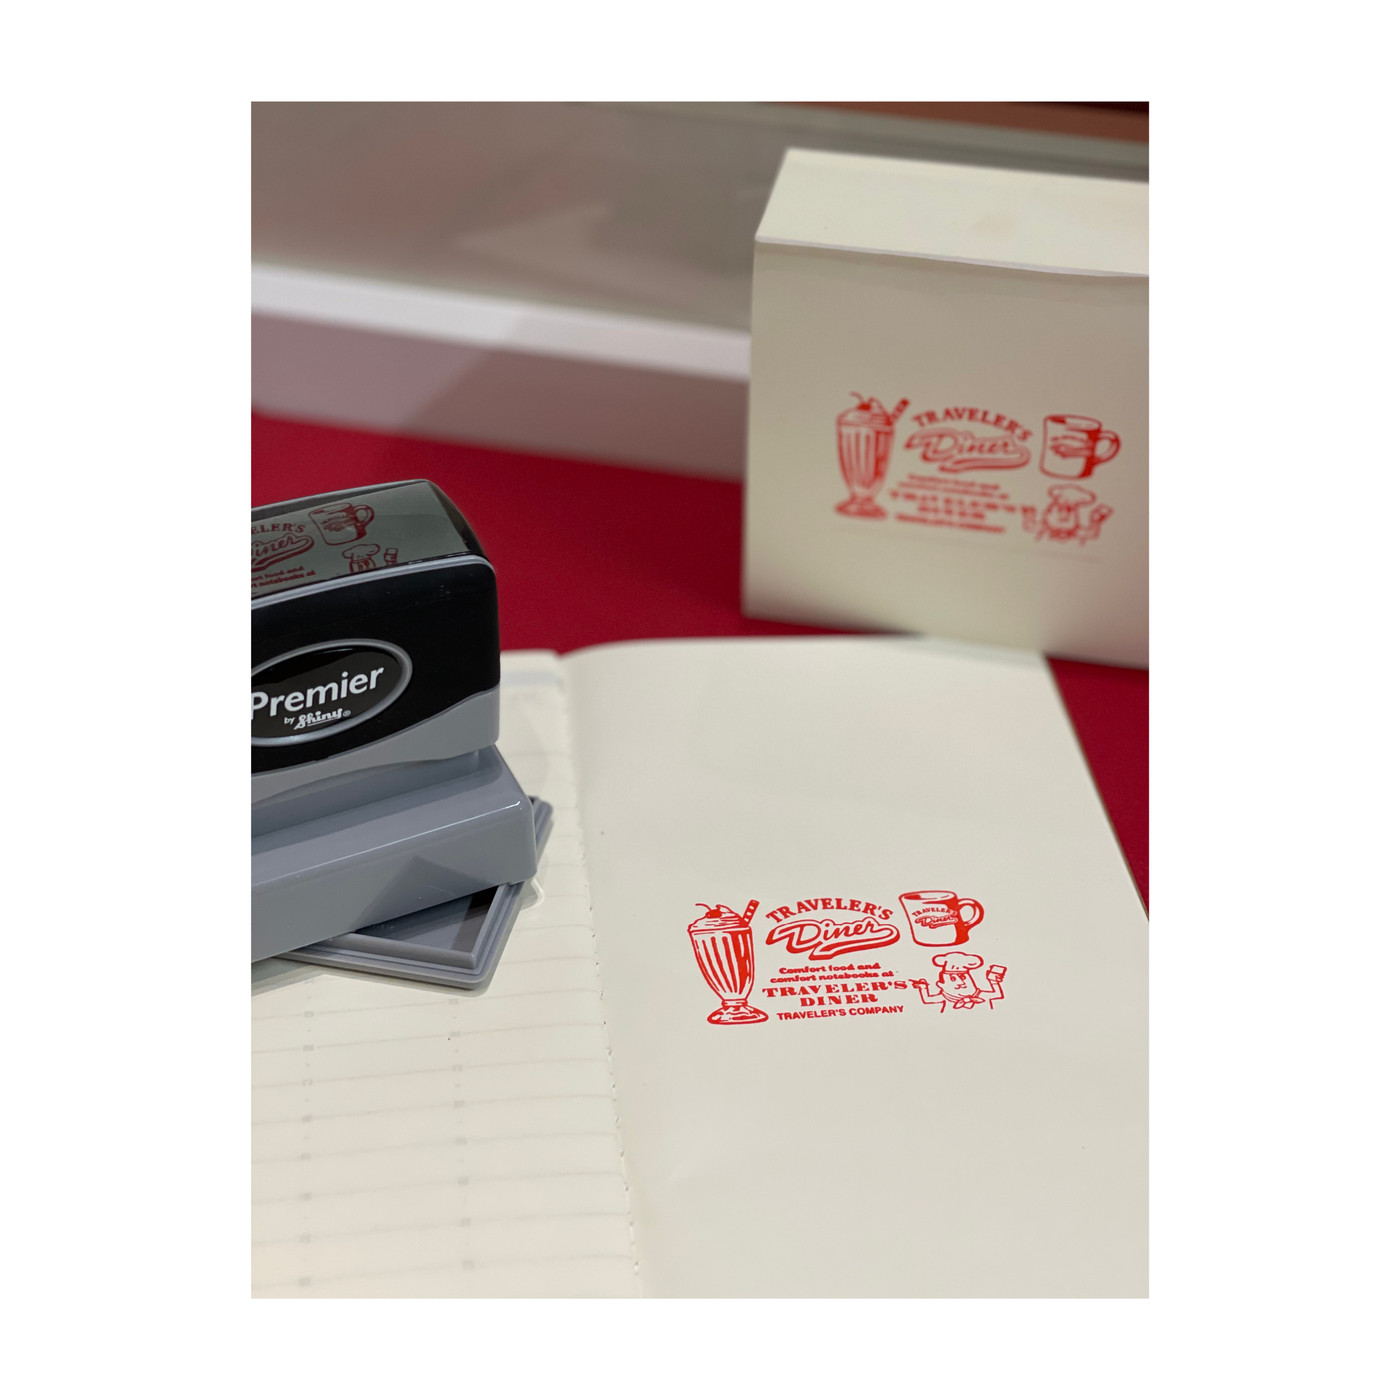 Stamped impression of TRAVELER'S Diner stamp